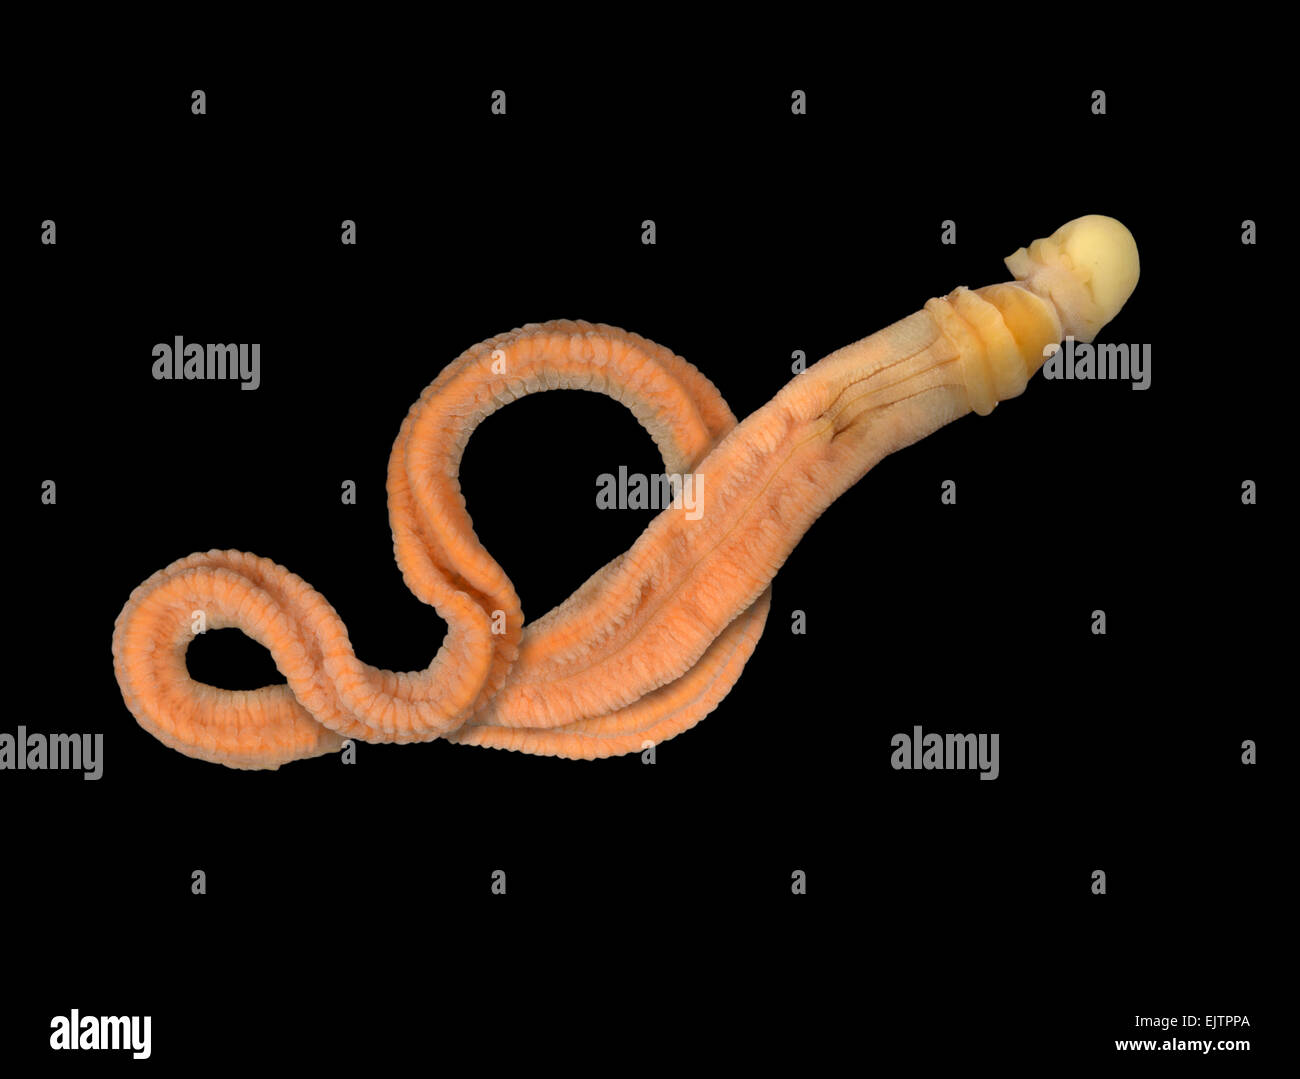 acorn worm diagram